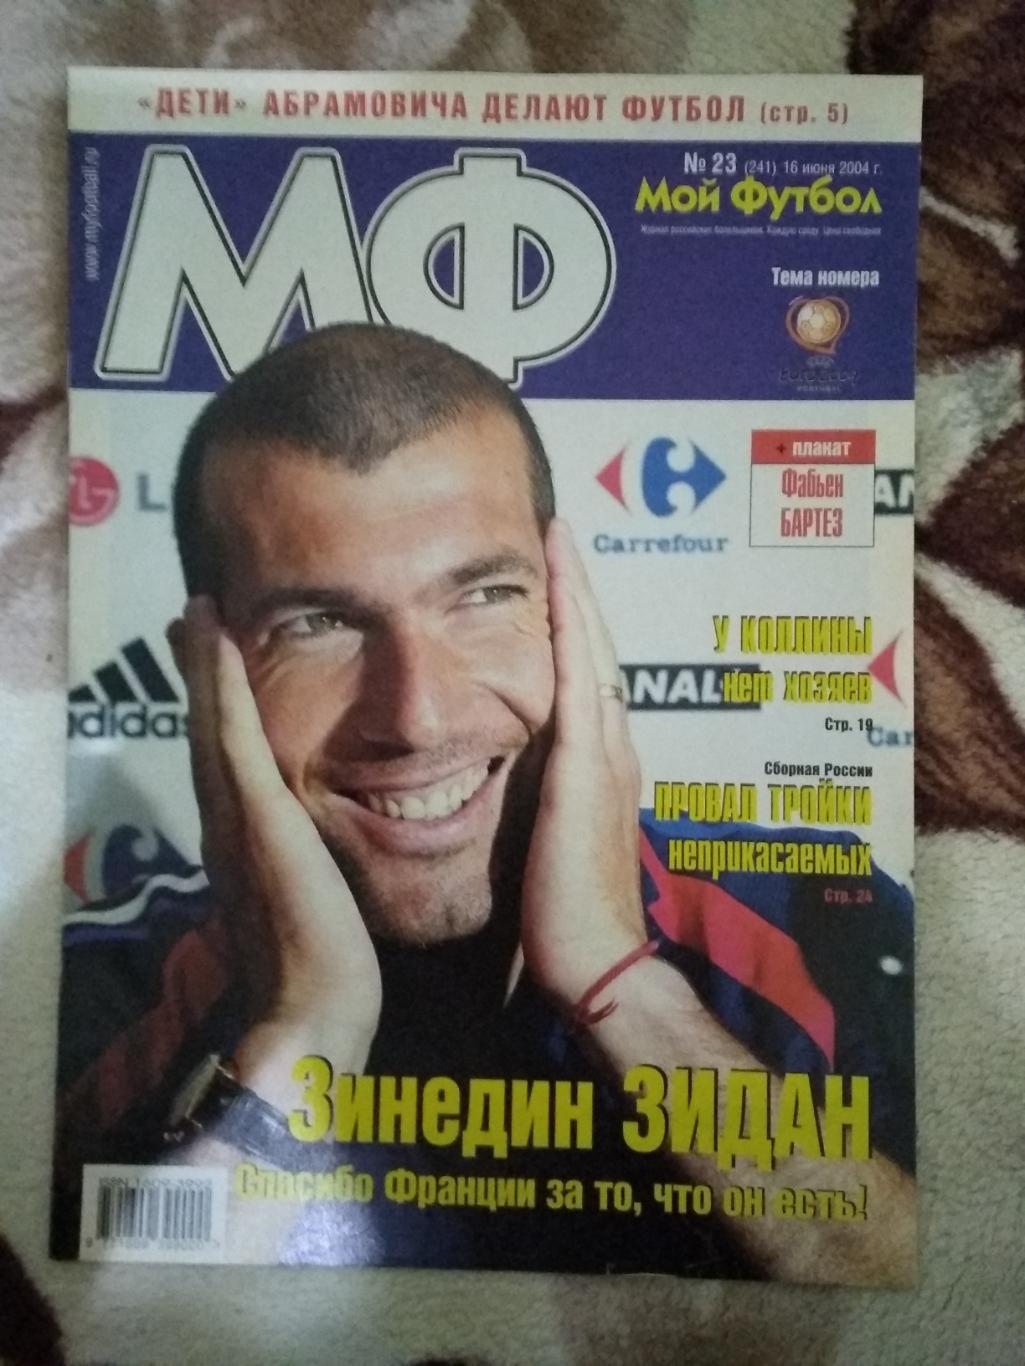 Журнал.Мой футбол №23 2004 г. (Чемпионат Европы) (постер).